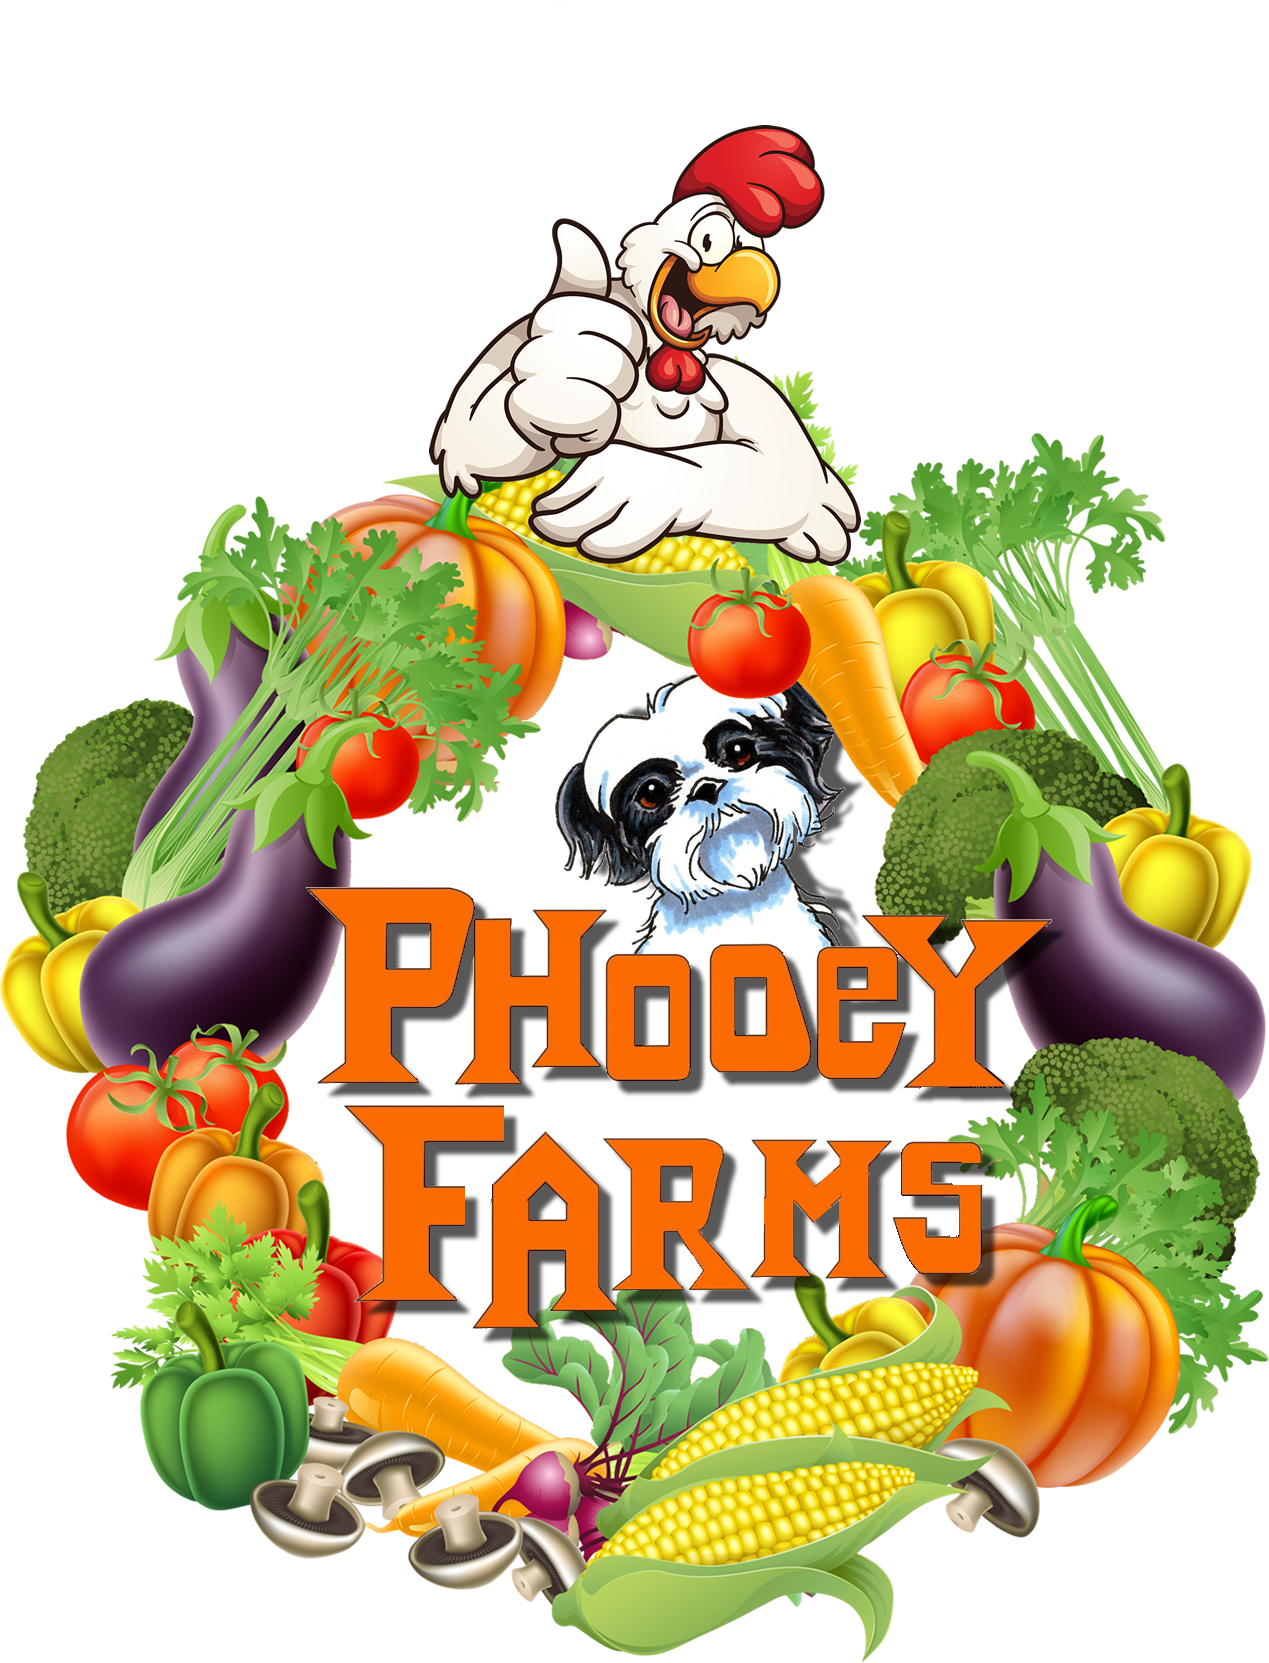 Phooey Farms